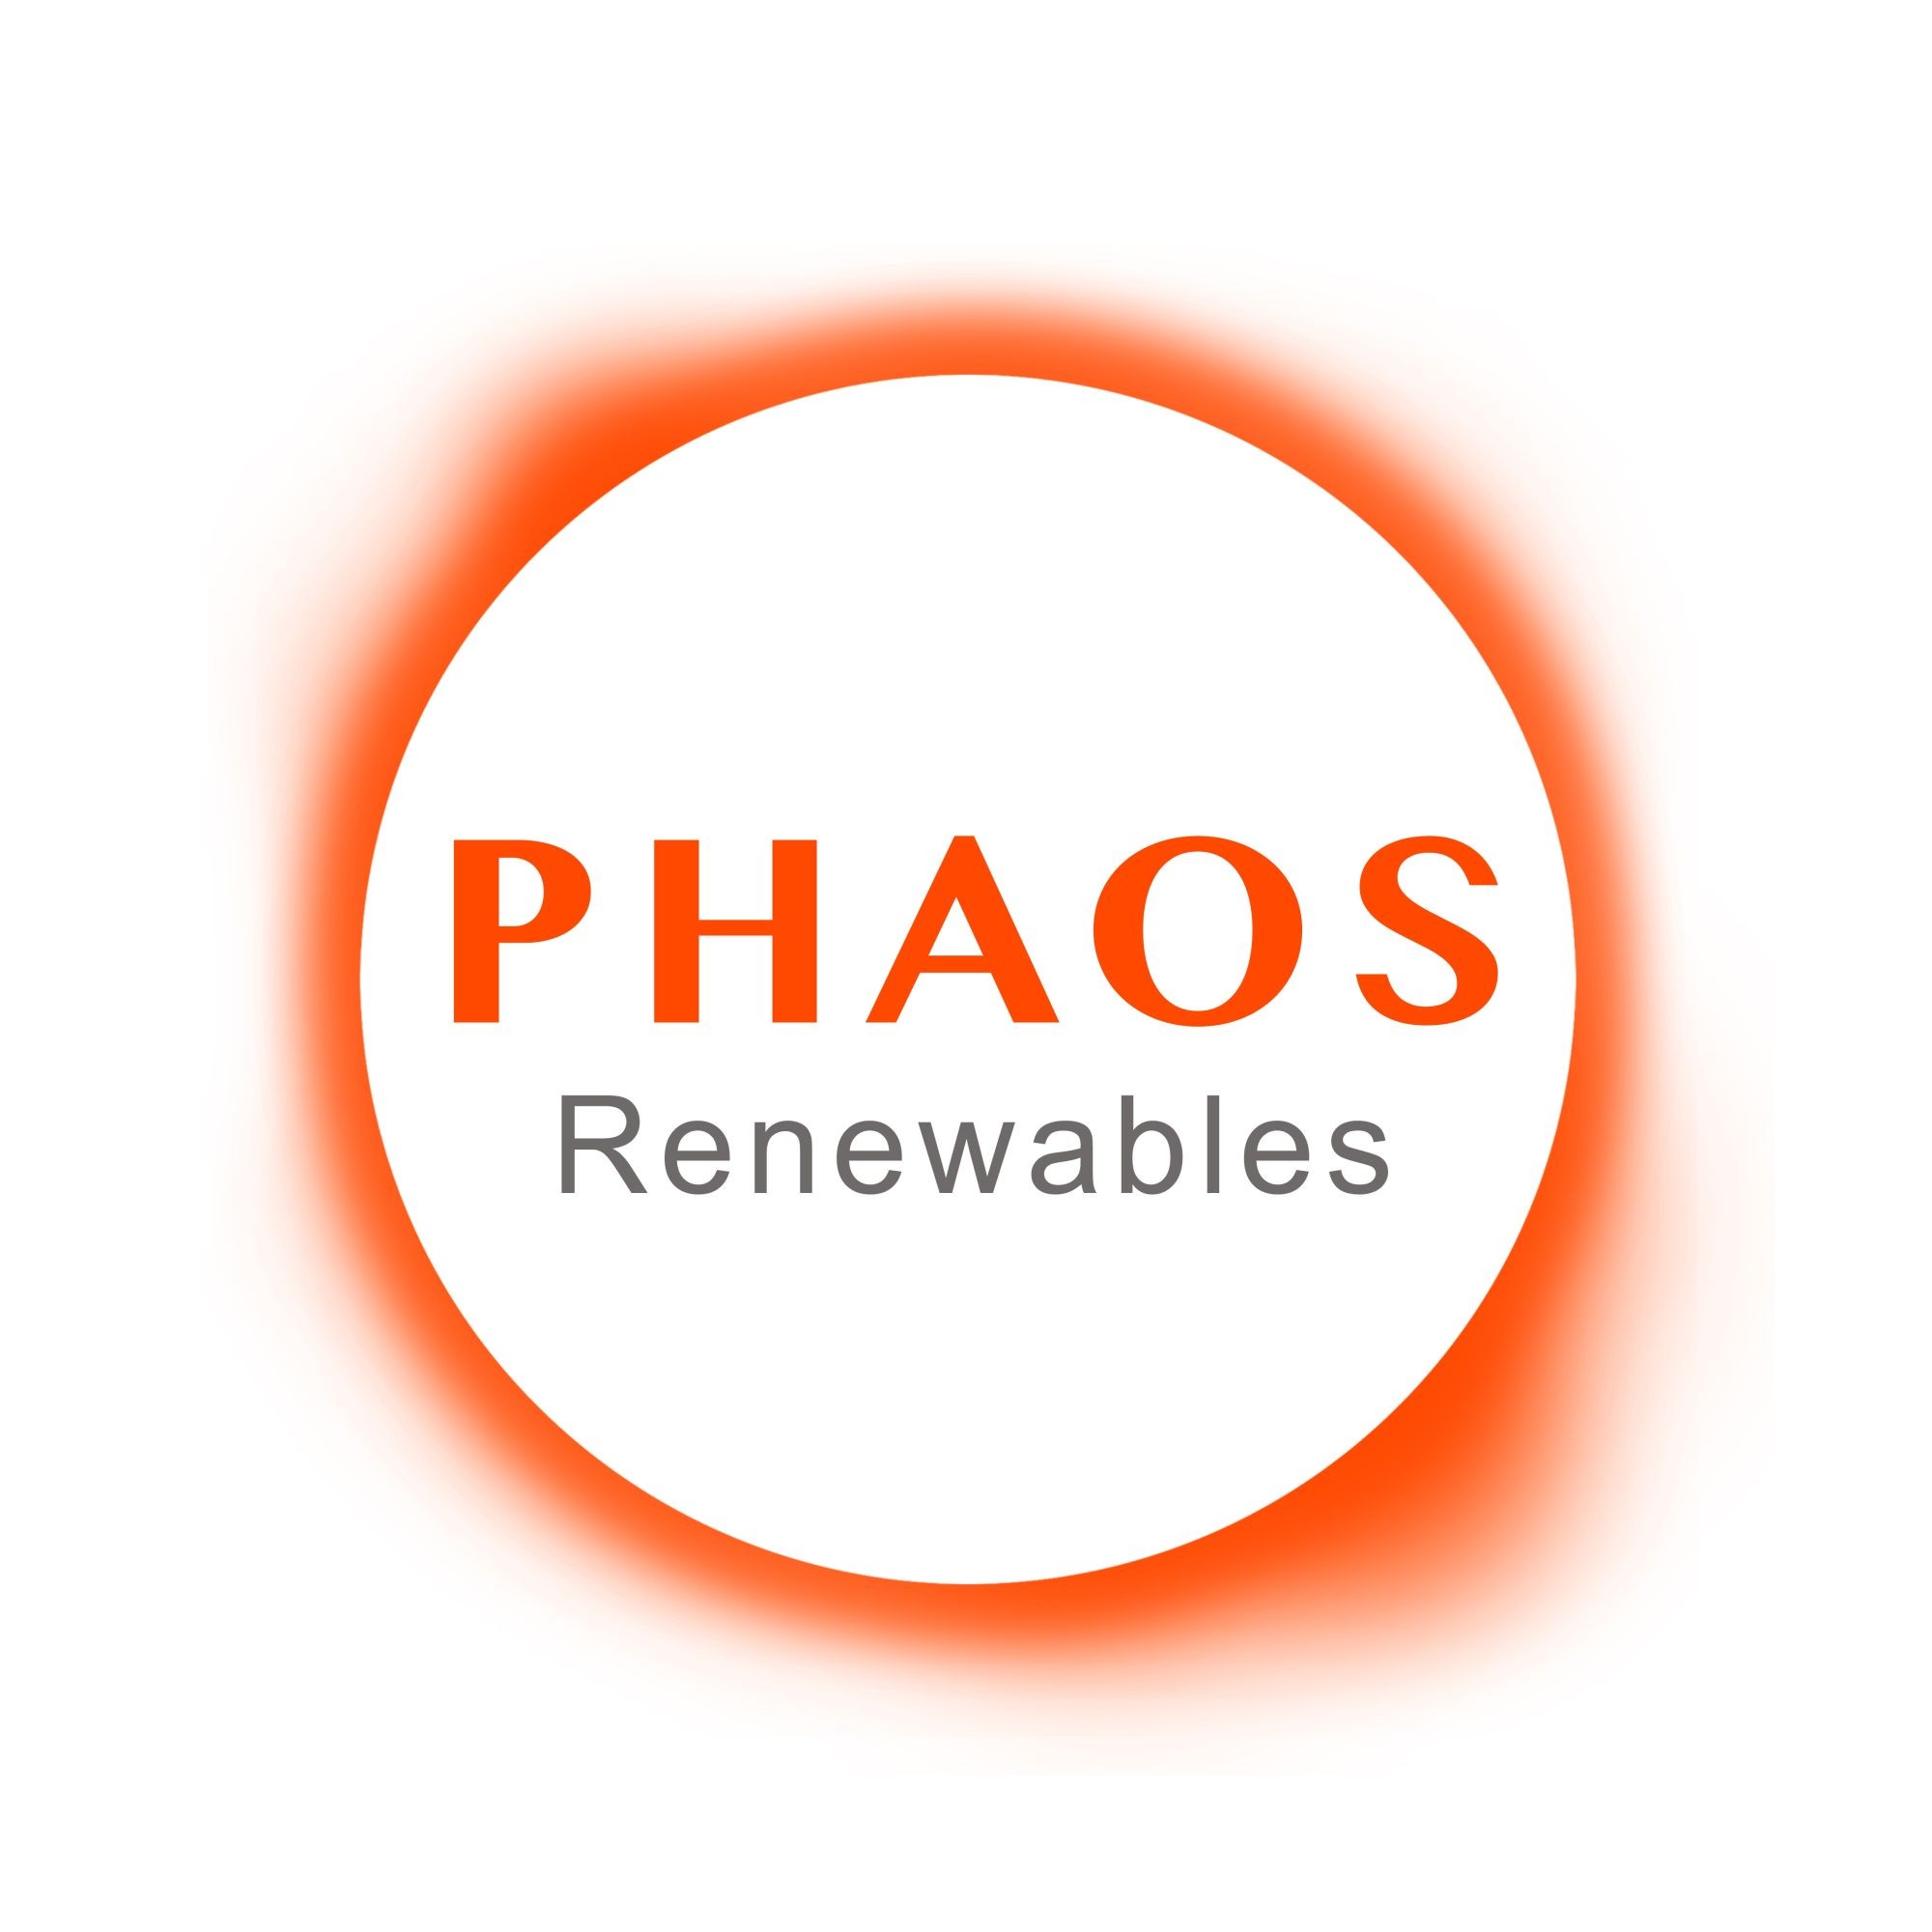 PHAOS Renewables